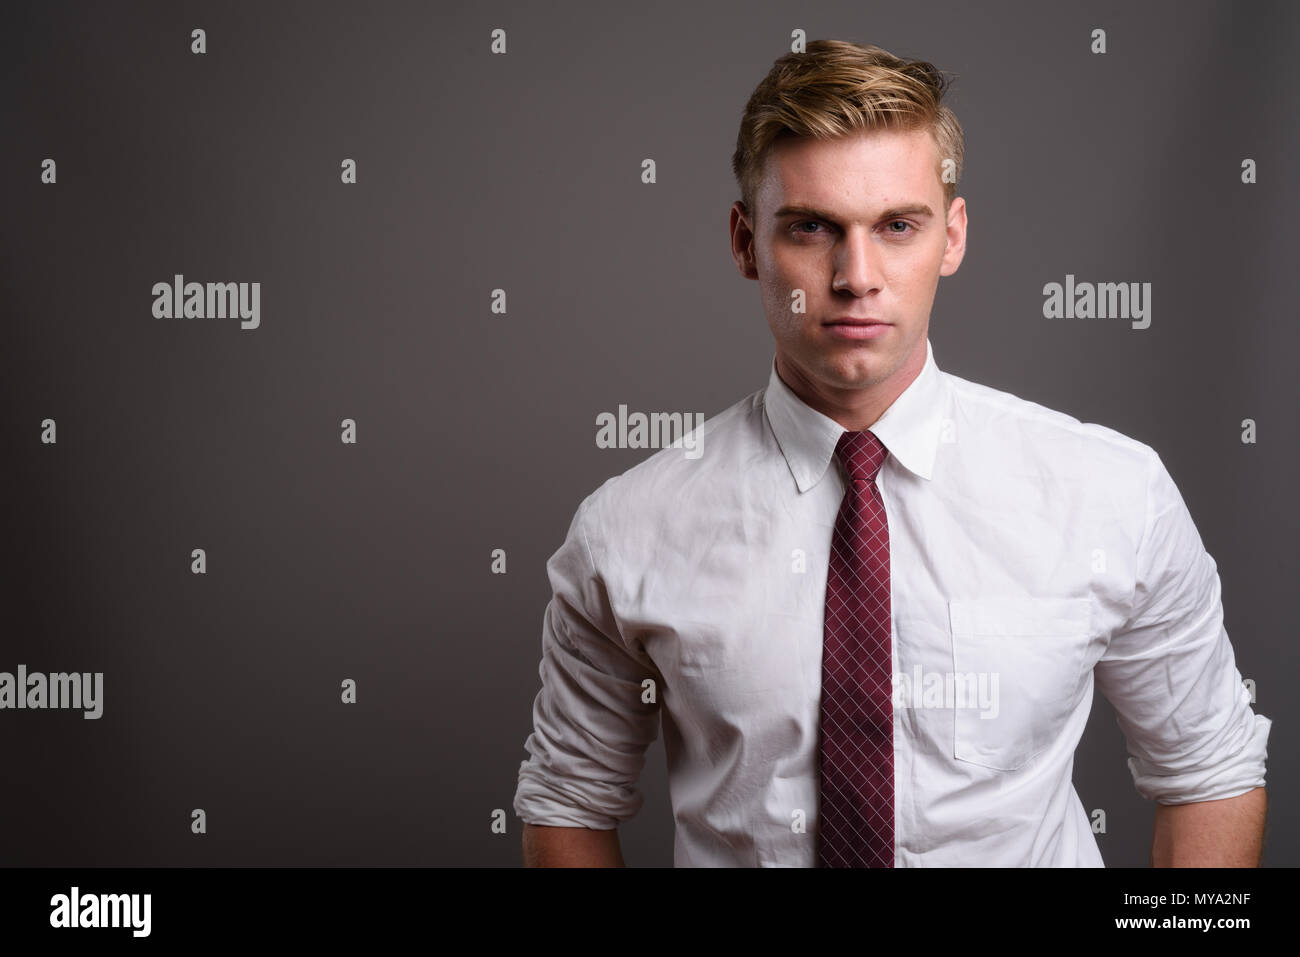 Empresario joven apuesto con el pelo rubio contra backgrou gris Foto de stock